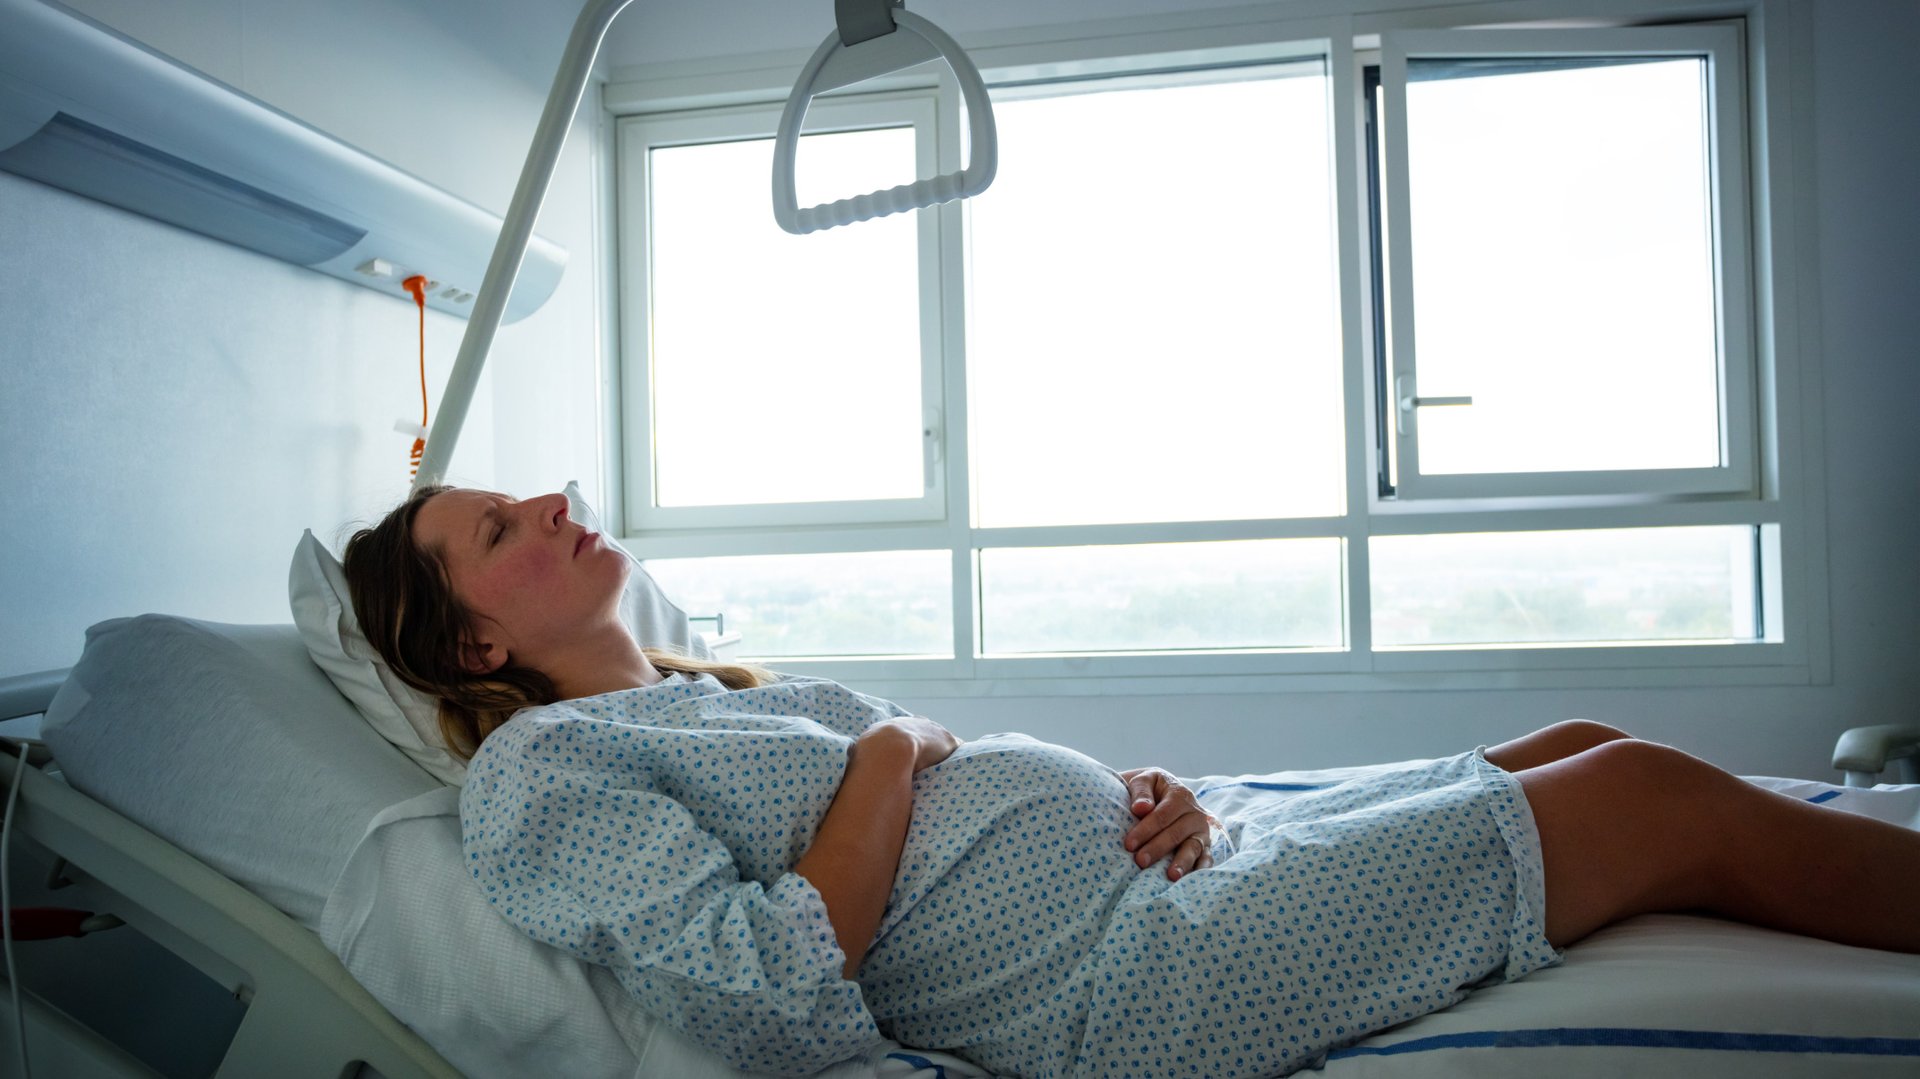 Kobieta w ciazy lezy na lozku szpitalnym